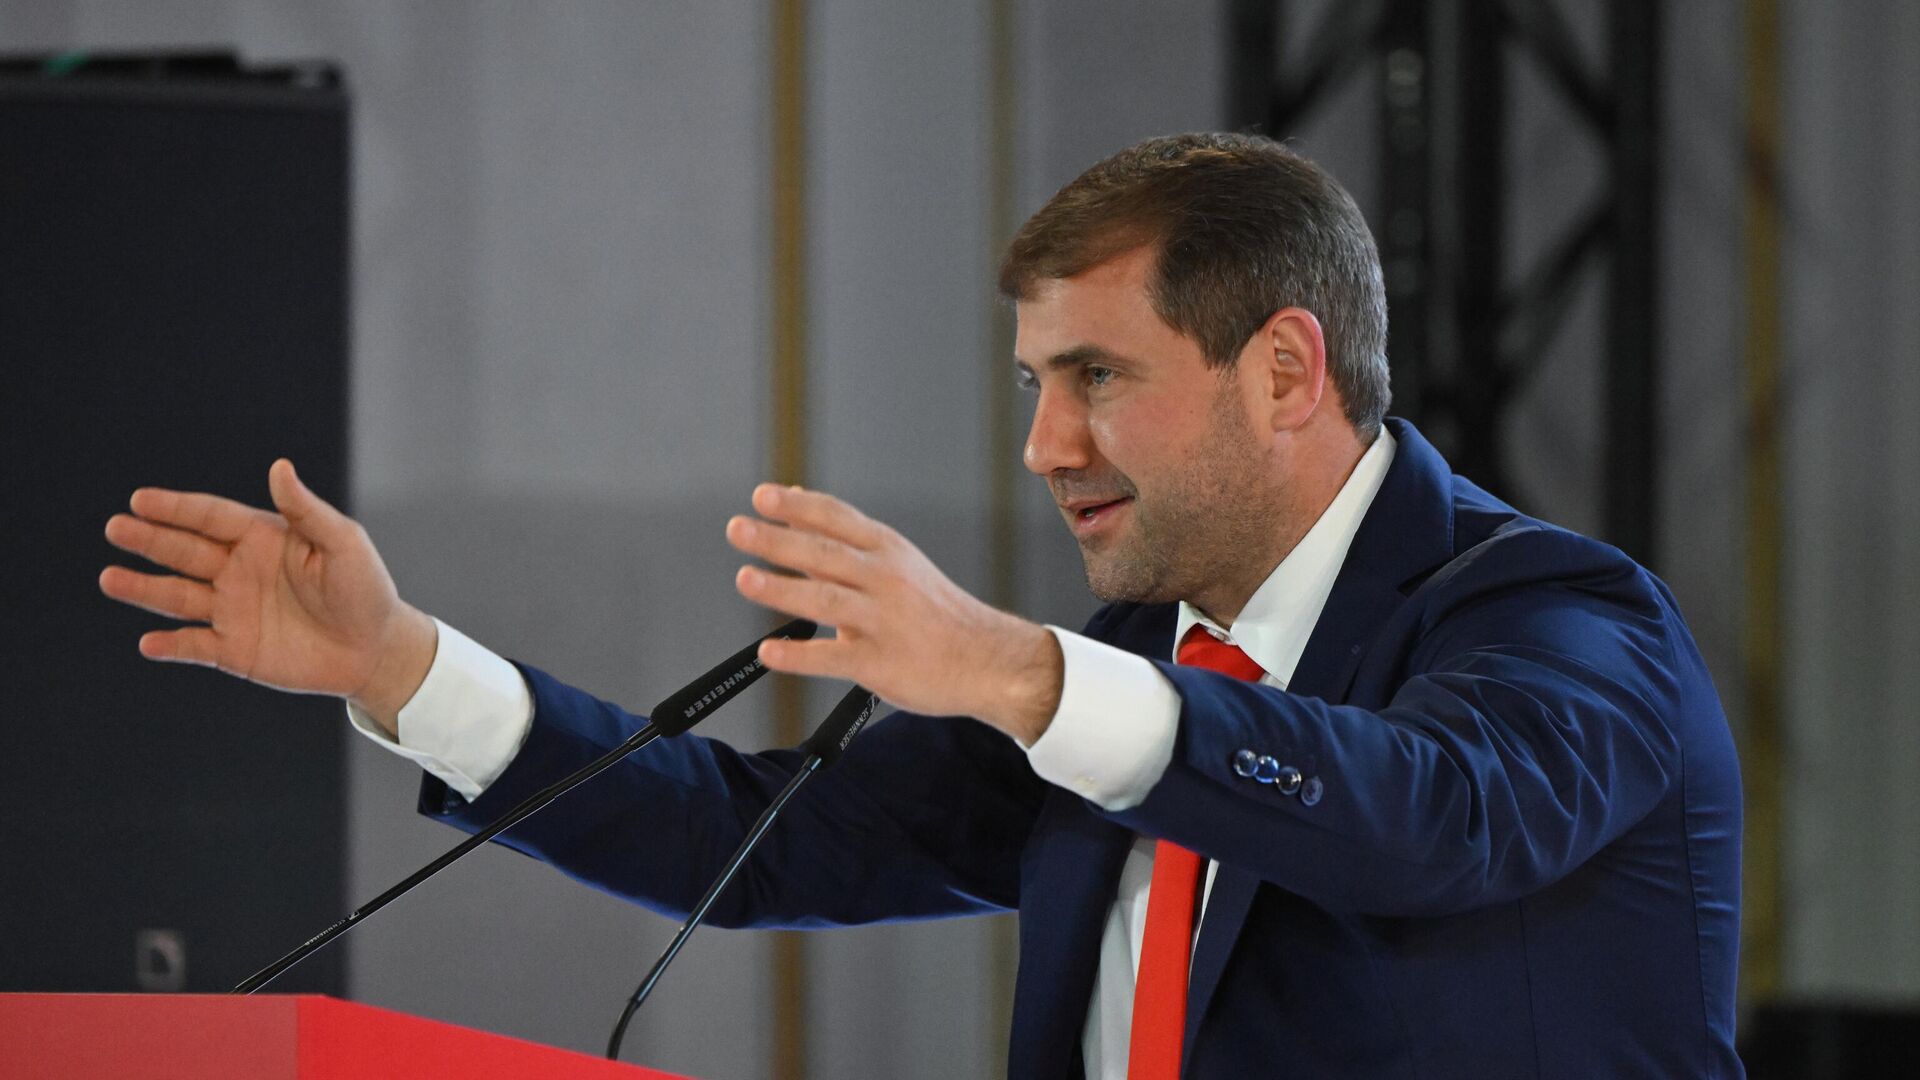 Будущее Молдавии тесно связано с партнерством с Россией, заявил Шор